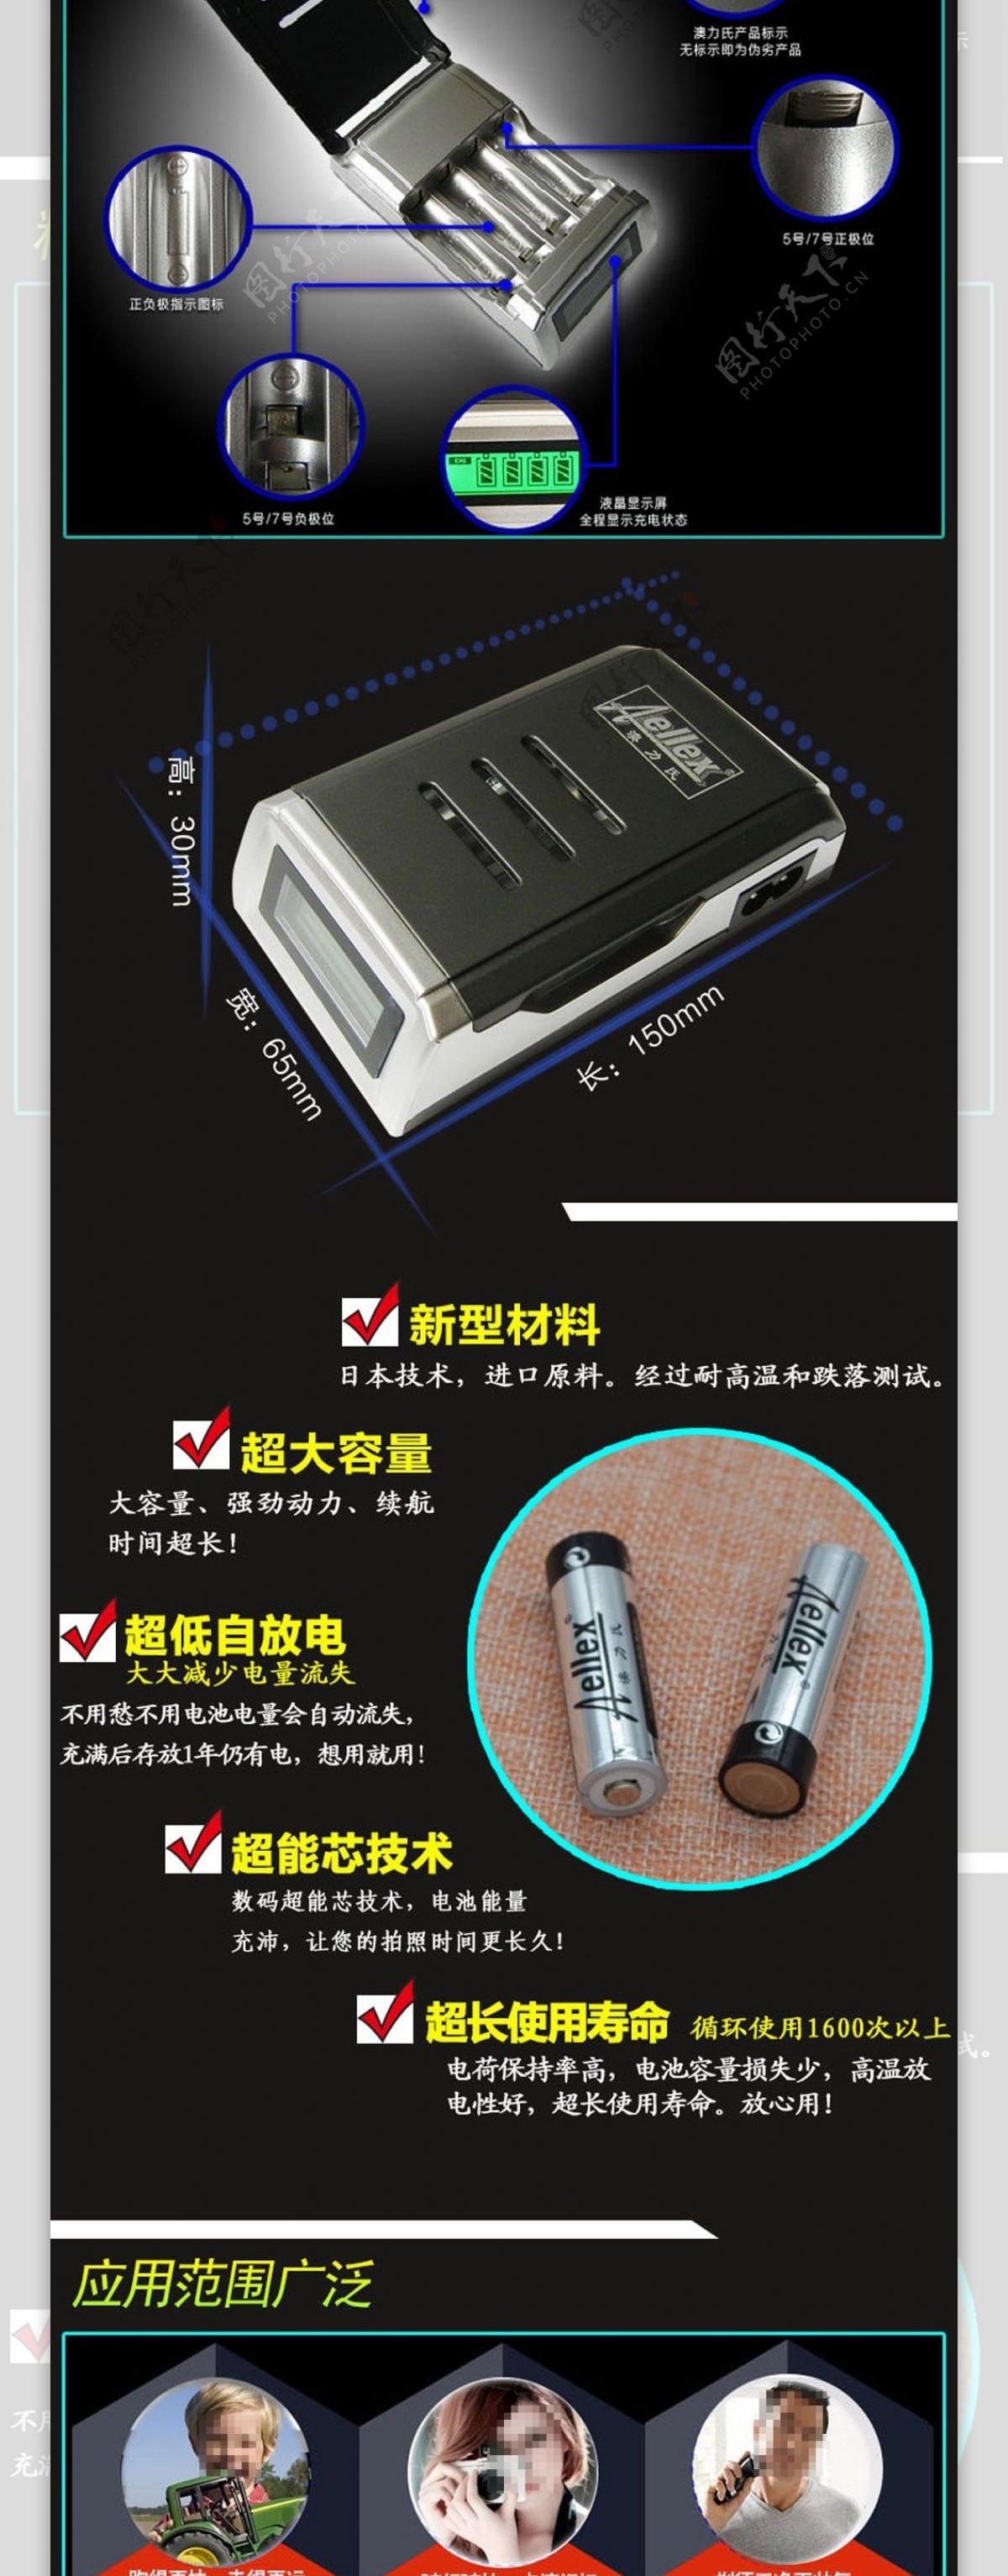 炫酷充电电池京东天猫详情模板充电器